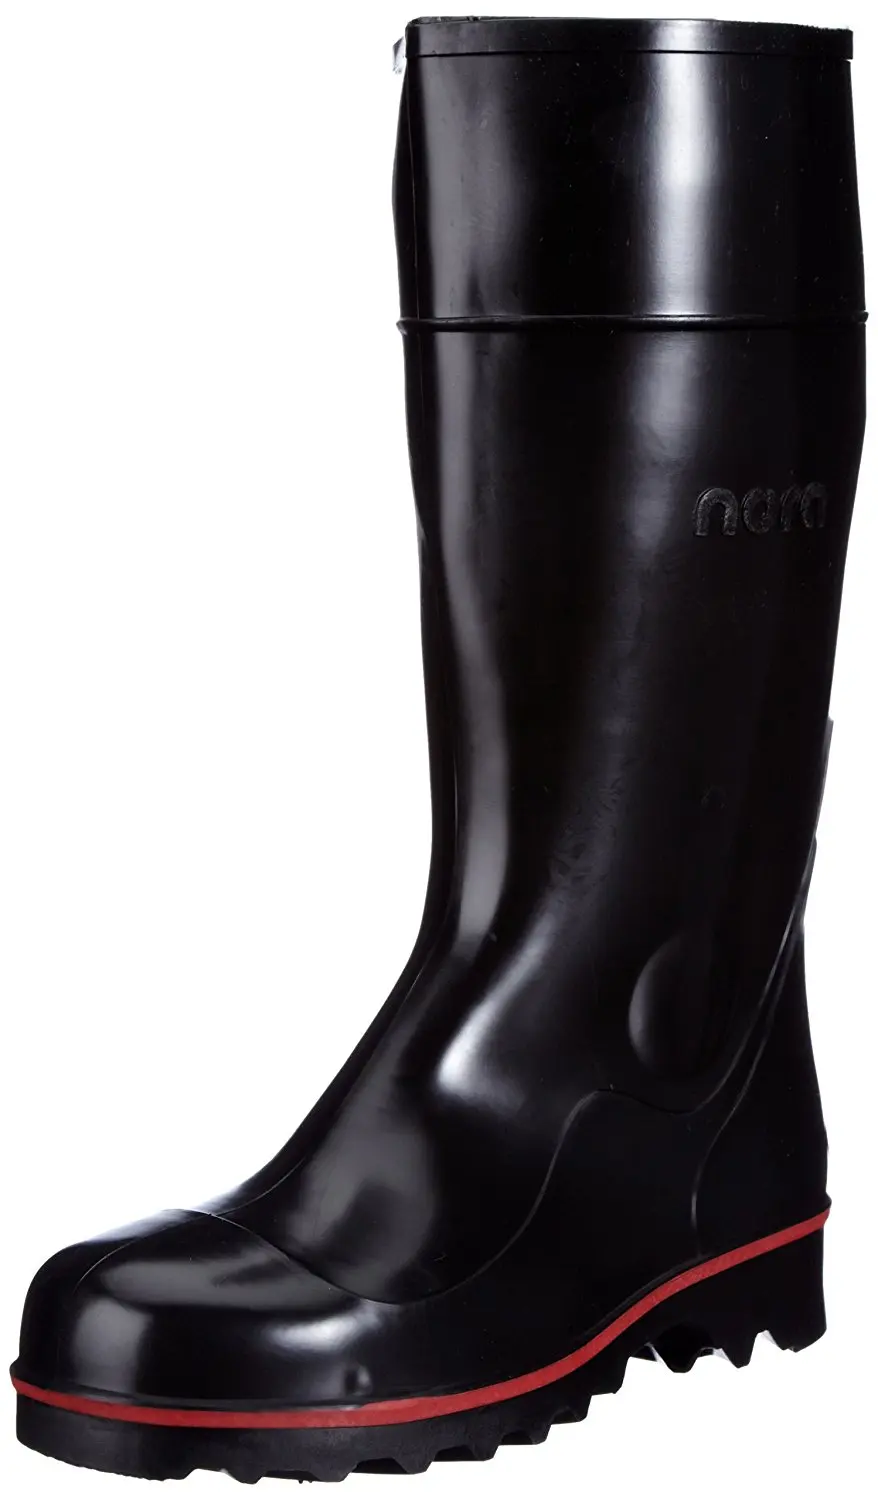 rain boots designer